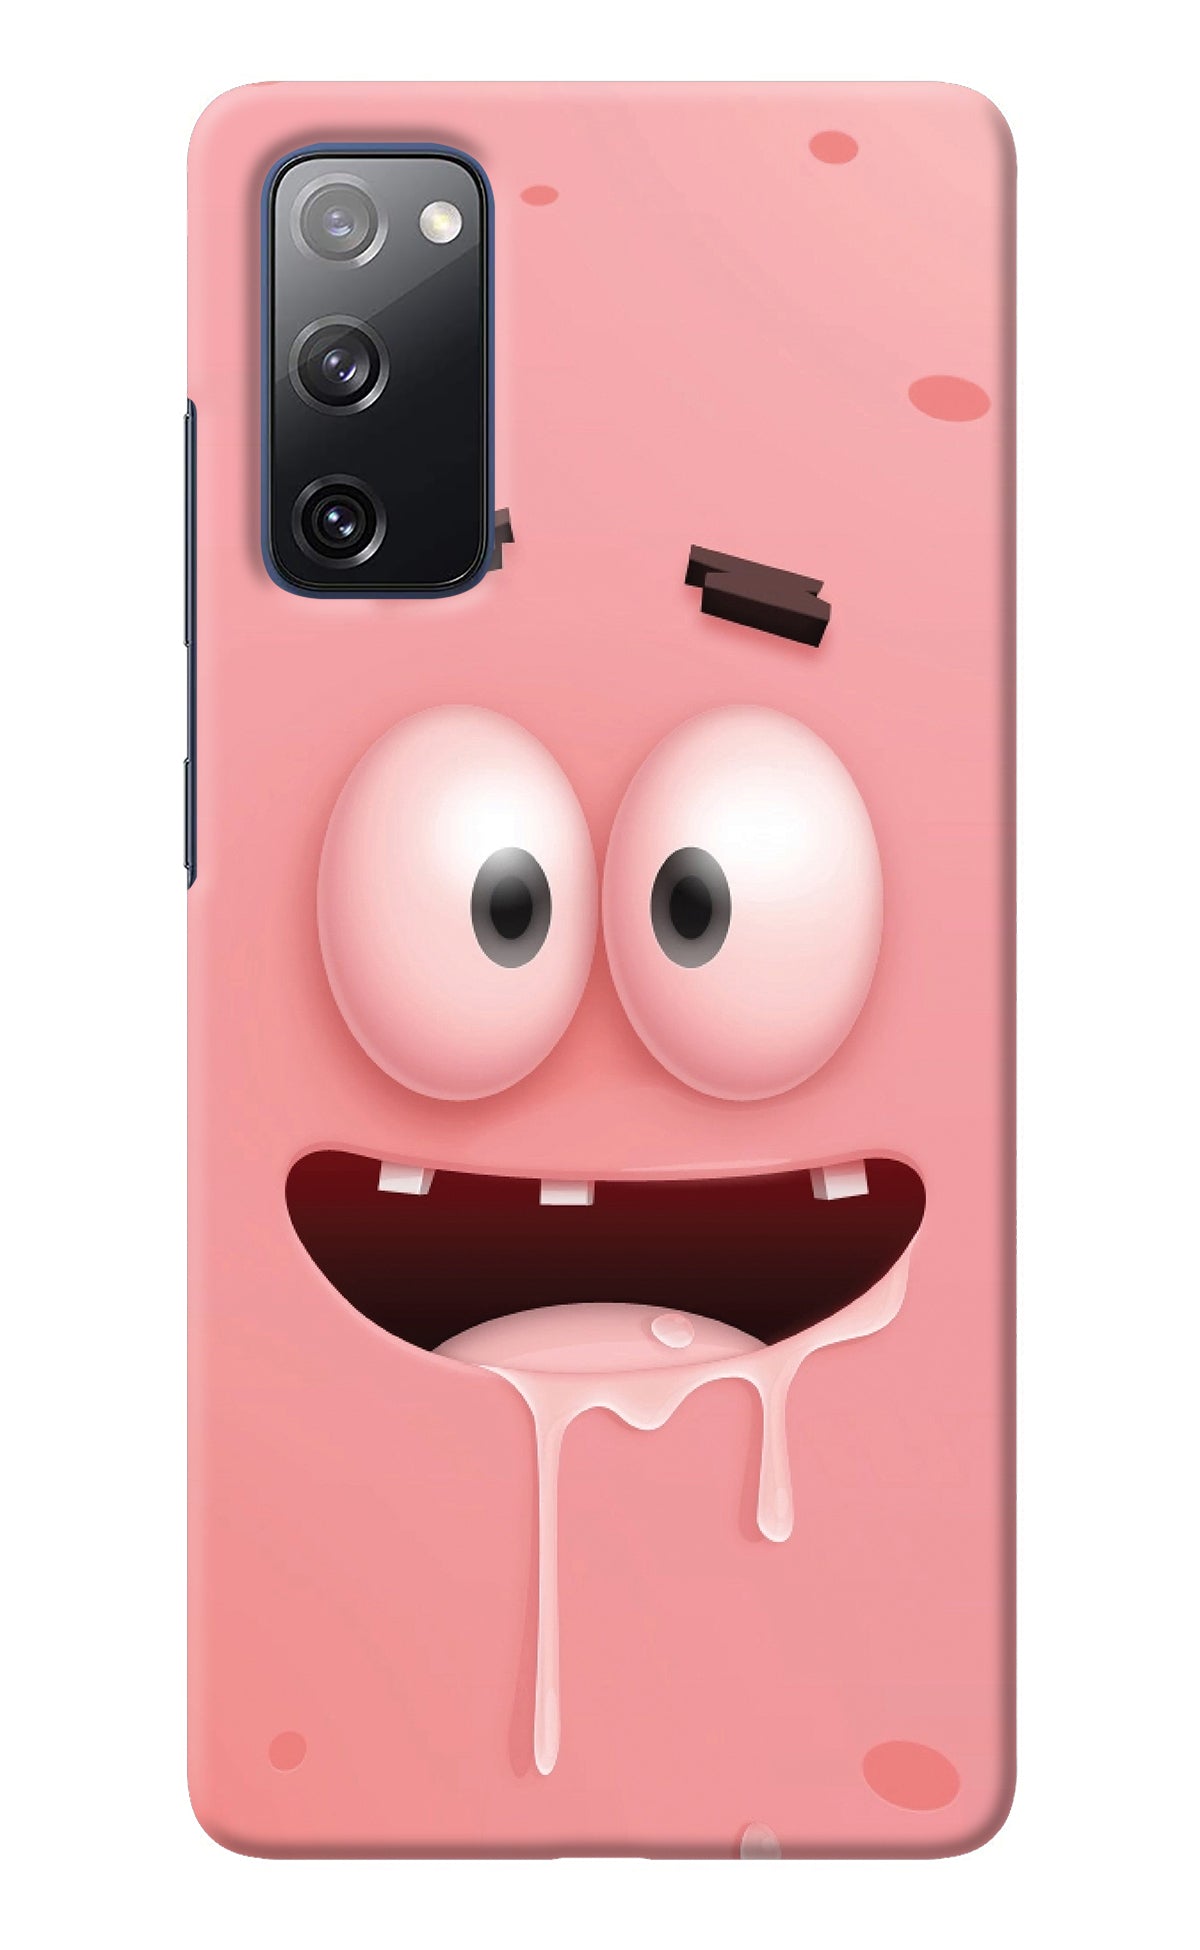 Sponge 2 Samsung S20 FE Back Cover